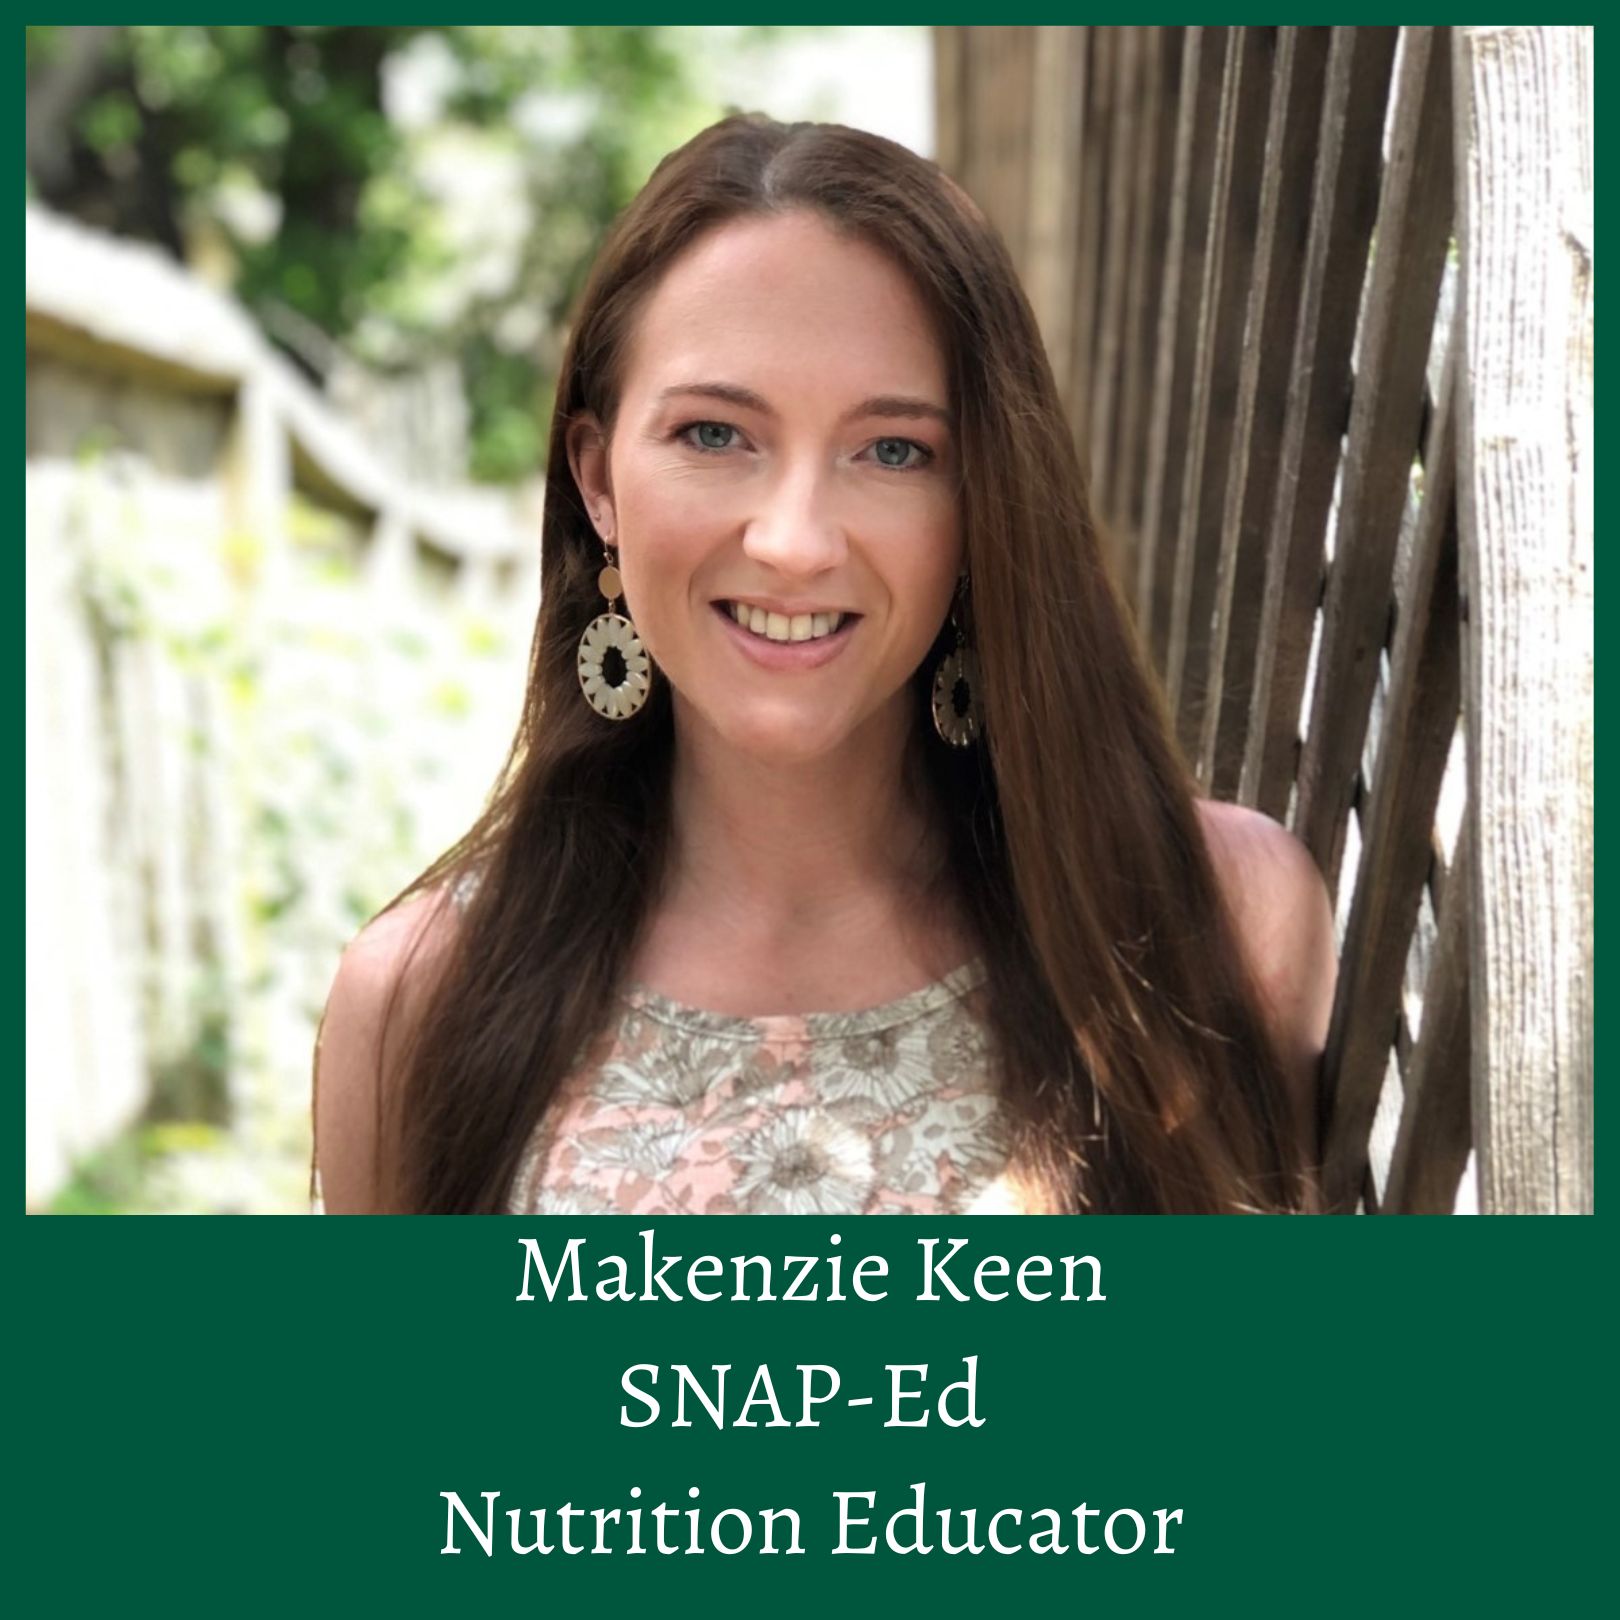 Makenzie K. new SNAP-Ed Nutrition Educator